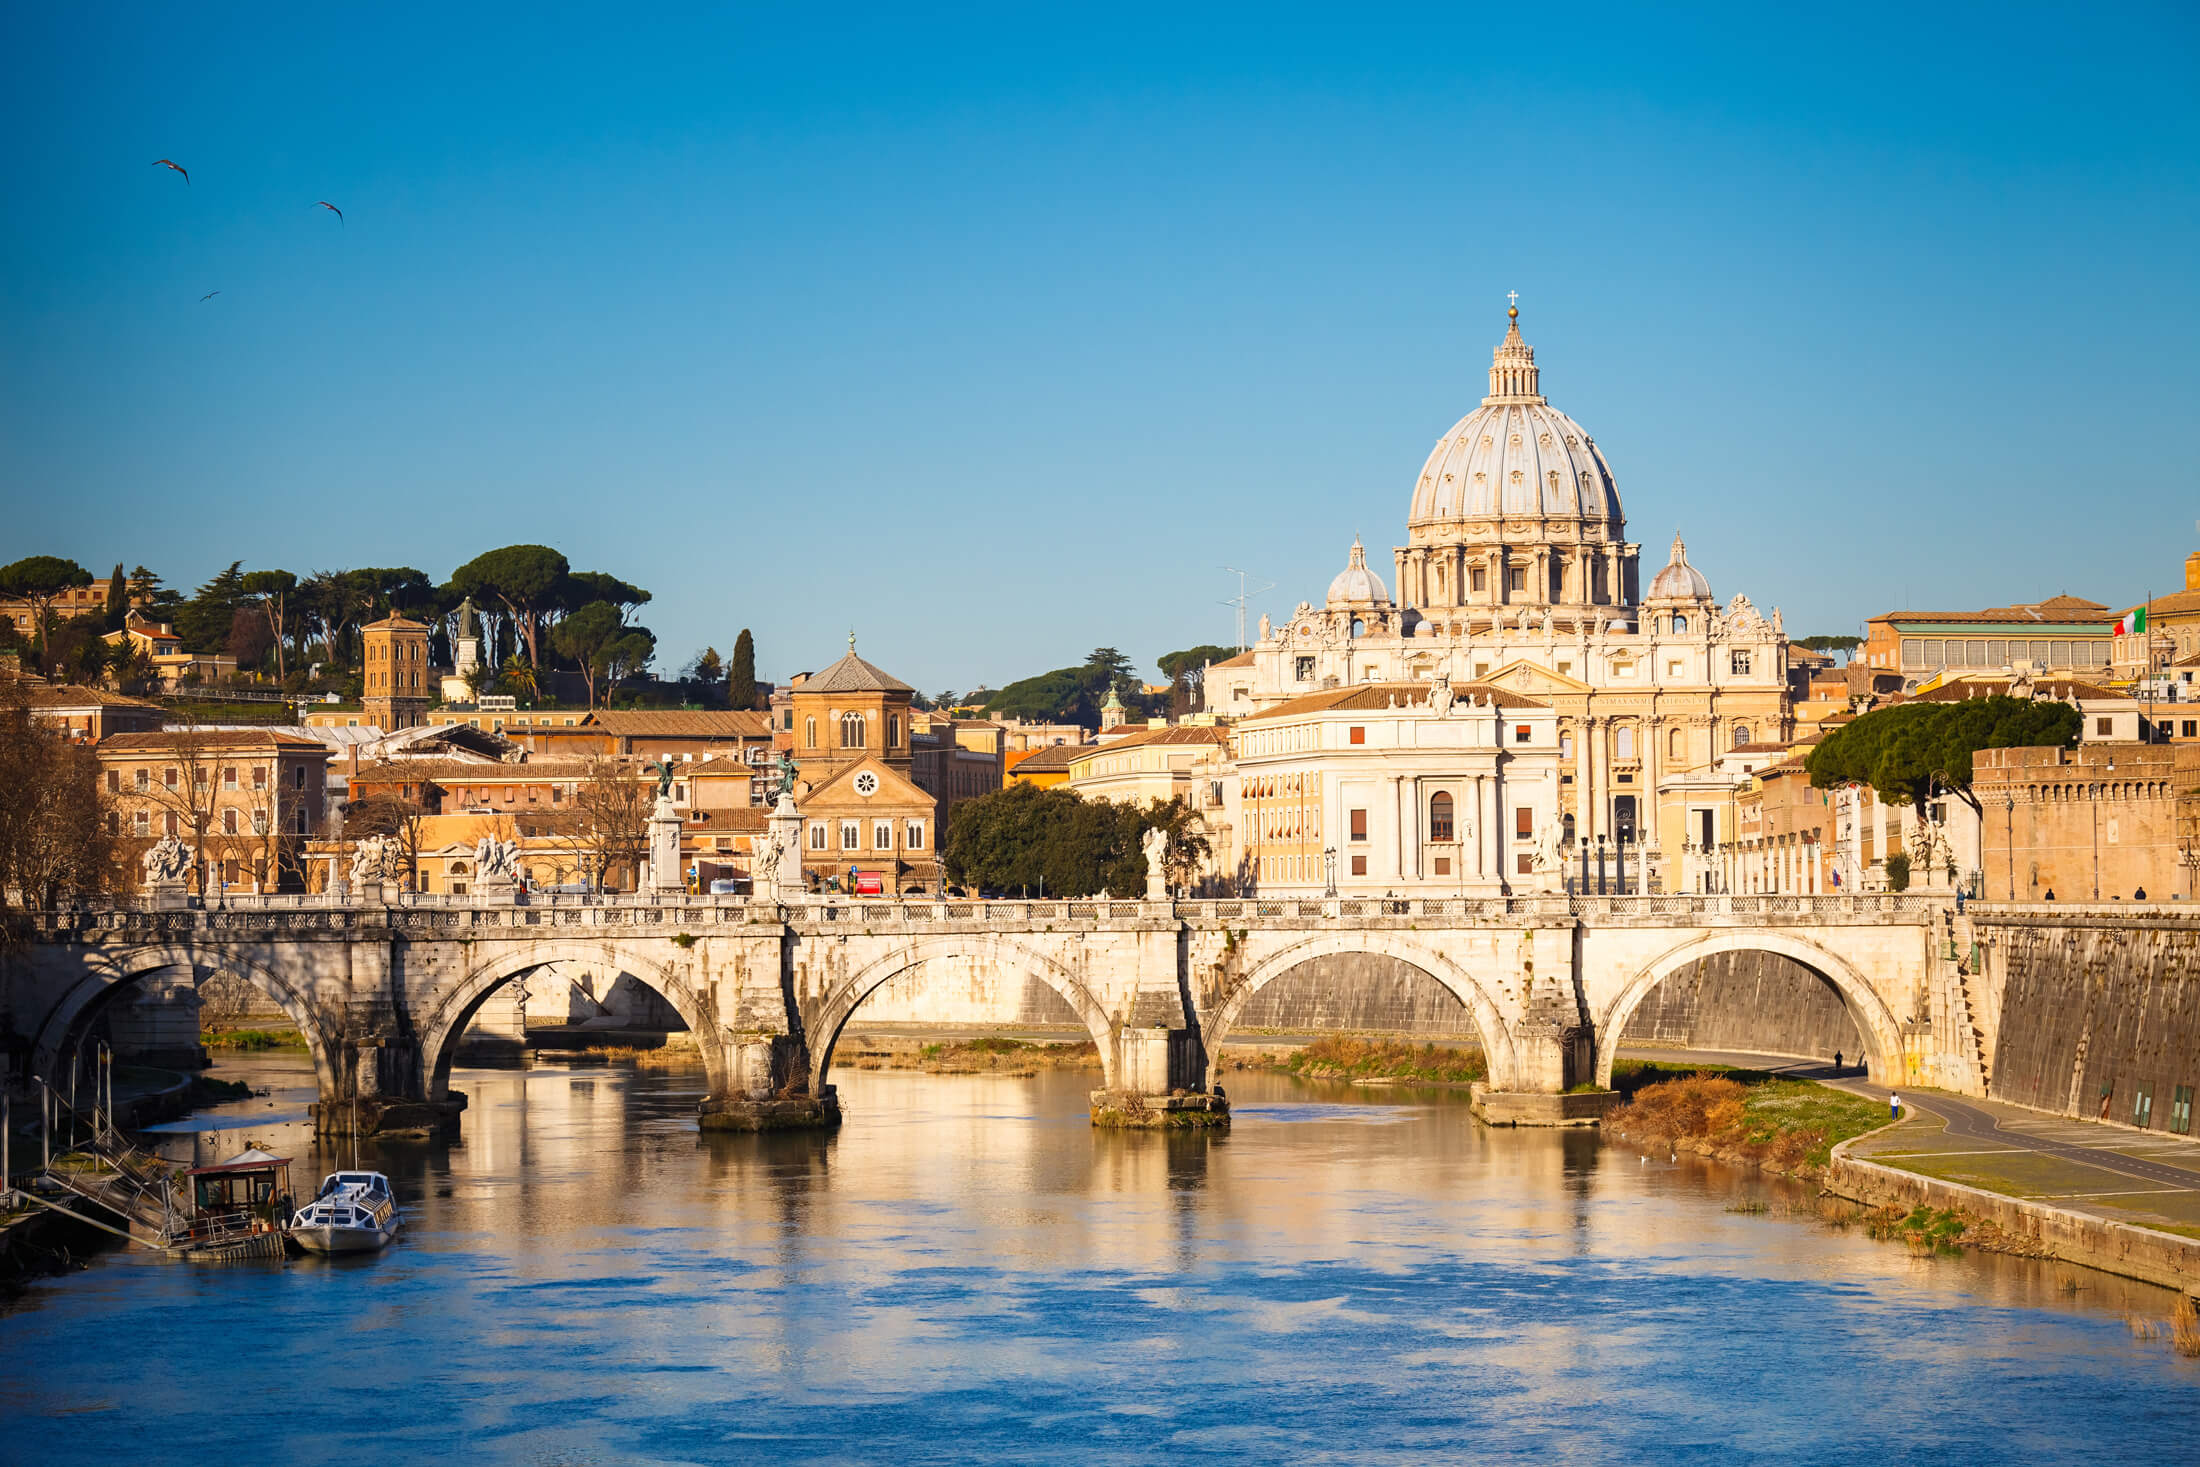 Seguendo il fiume Tevere fino alla Basilica di San Pietro a Roma, Italia